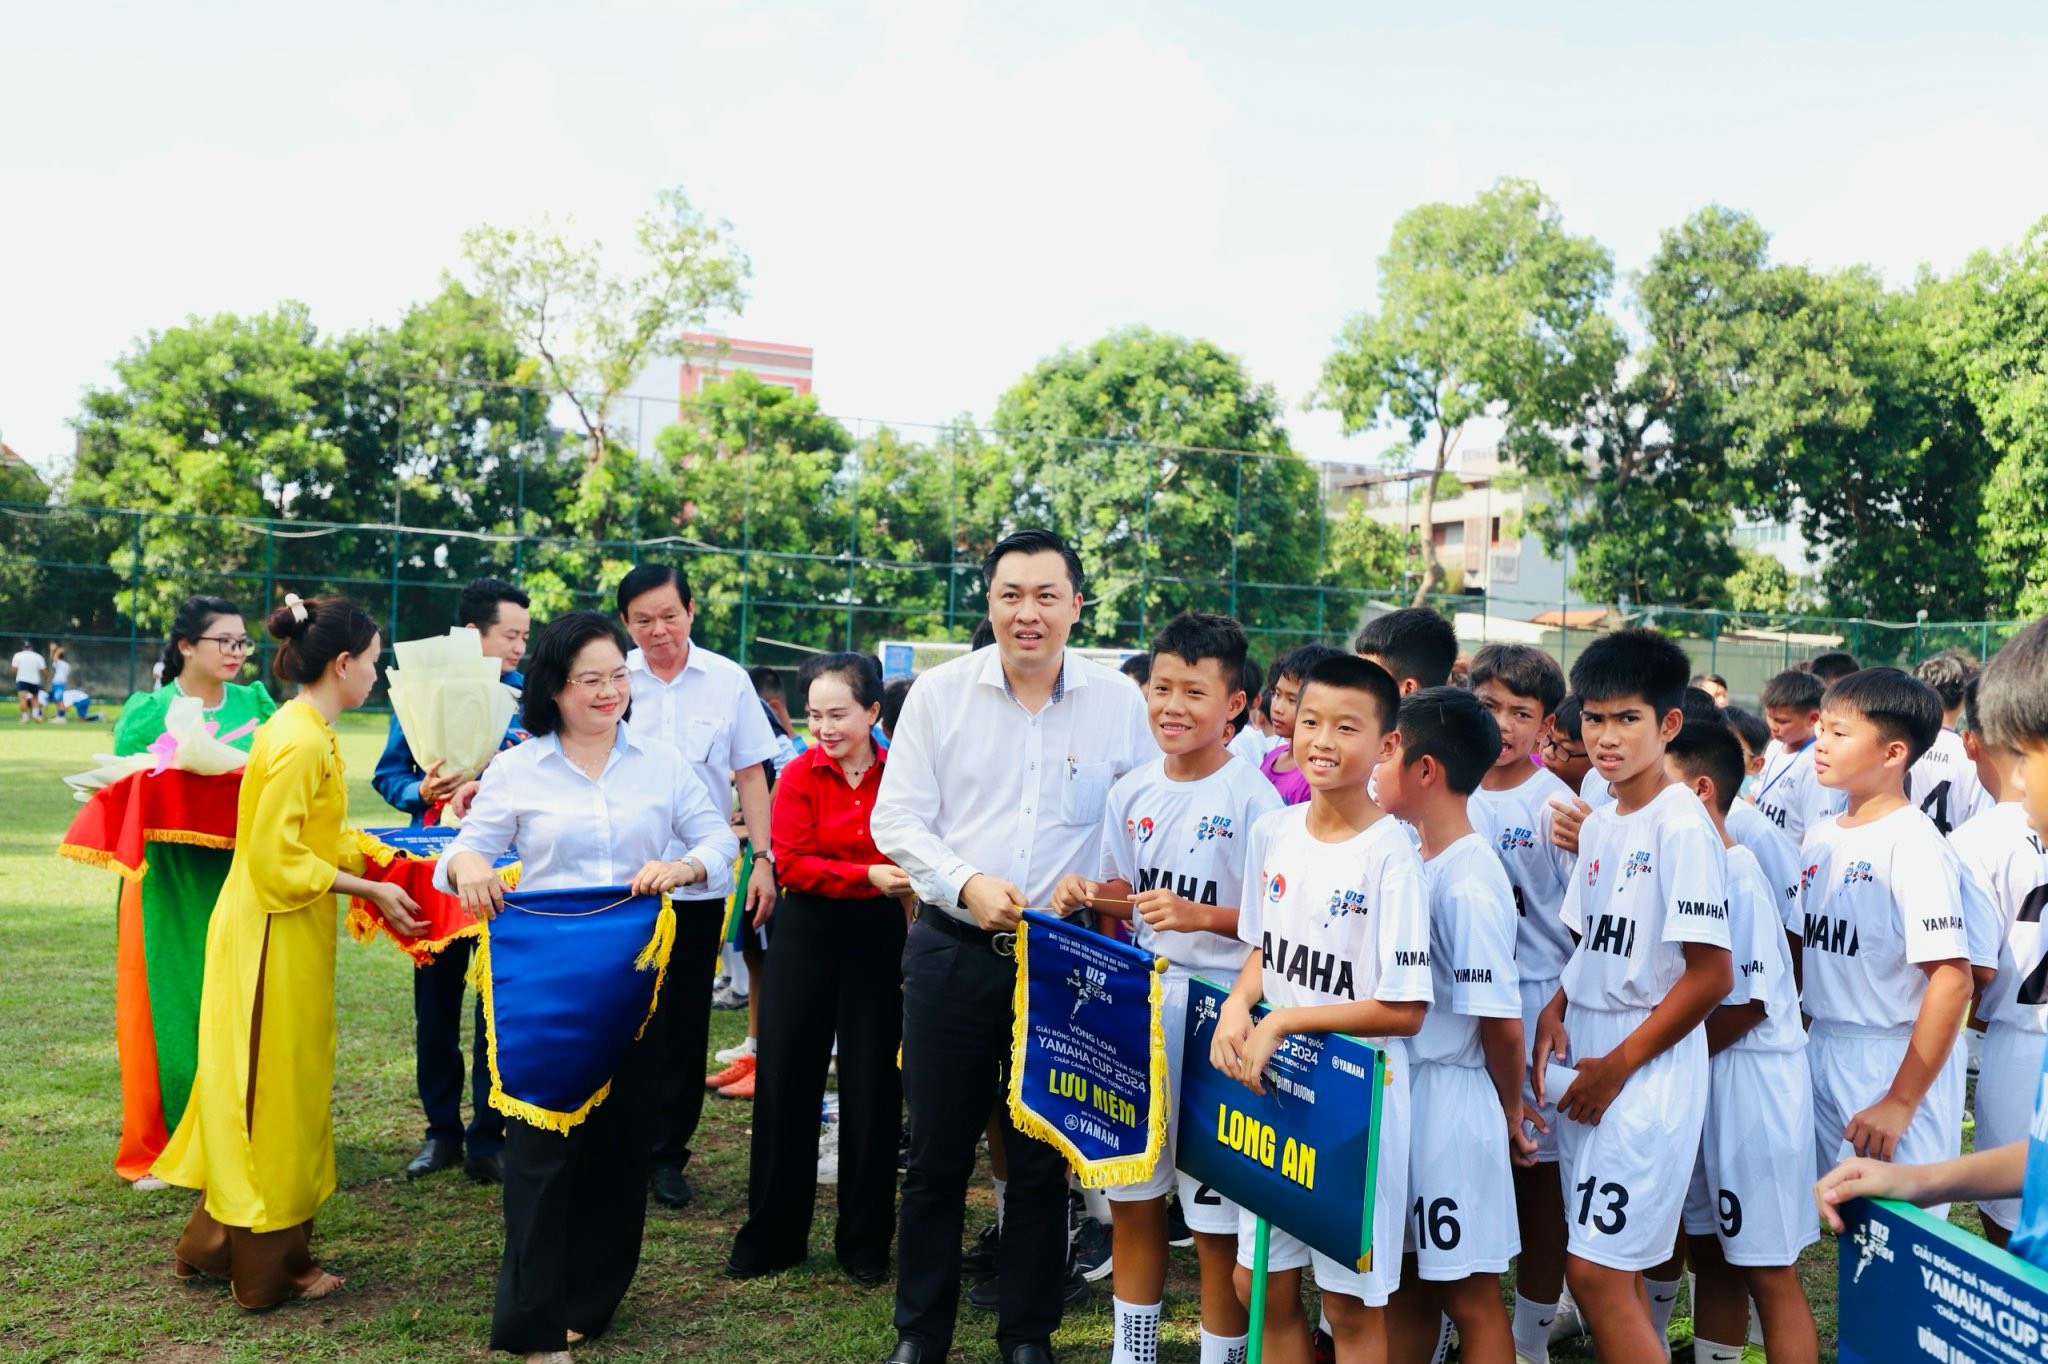 Ông Cao Văn Chóng – Phó Giám đốc Sở Văn hóa, Thể thao và Du lịch tỉnh Bình Dương, Trưởng ban tổ chức vòng bảng tại Bình Dương tặng Cờ lưu niệm cho các đội về tham dự Giải.